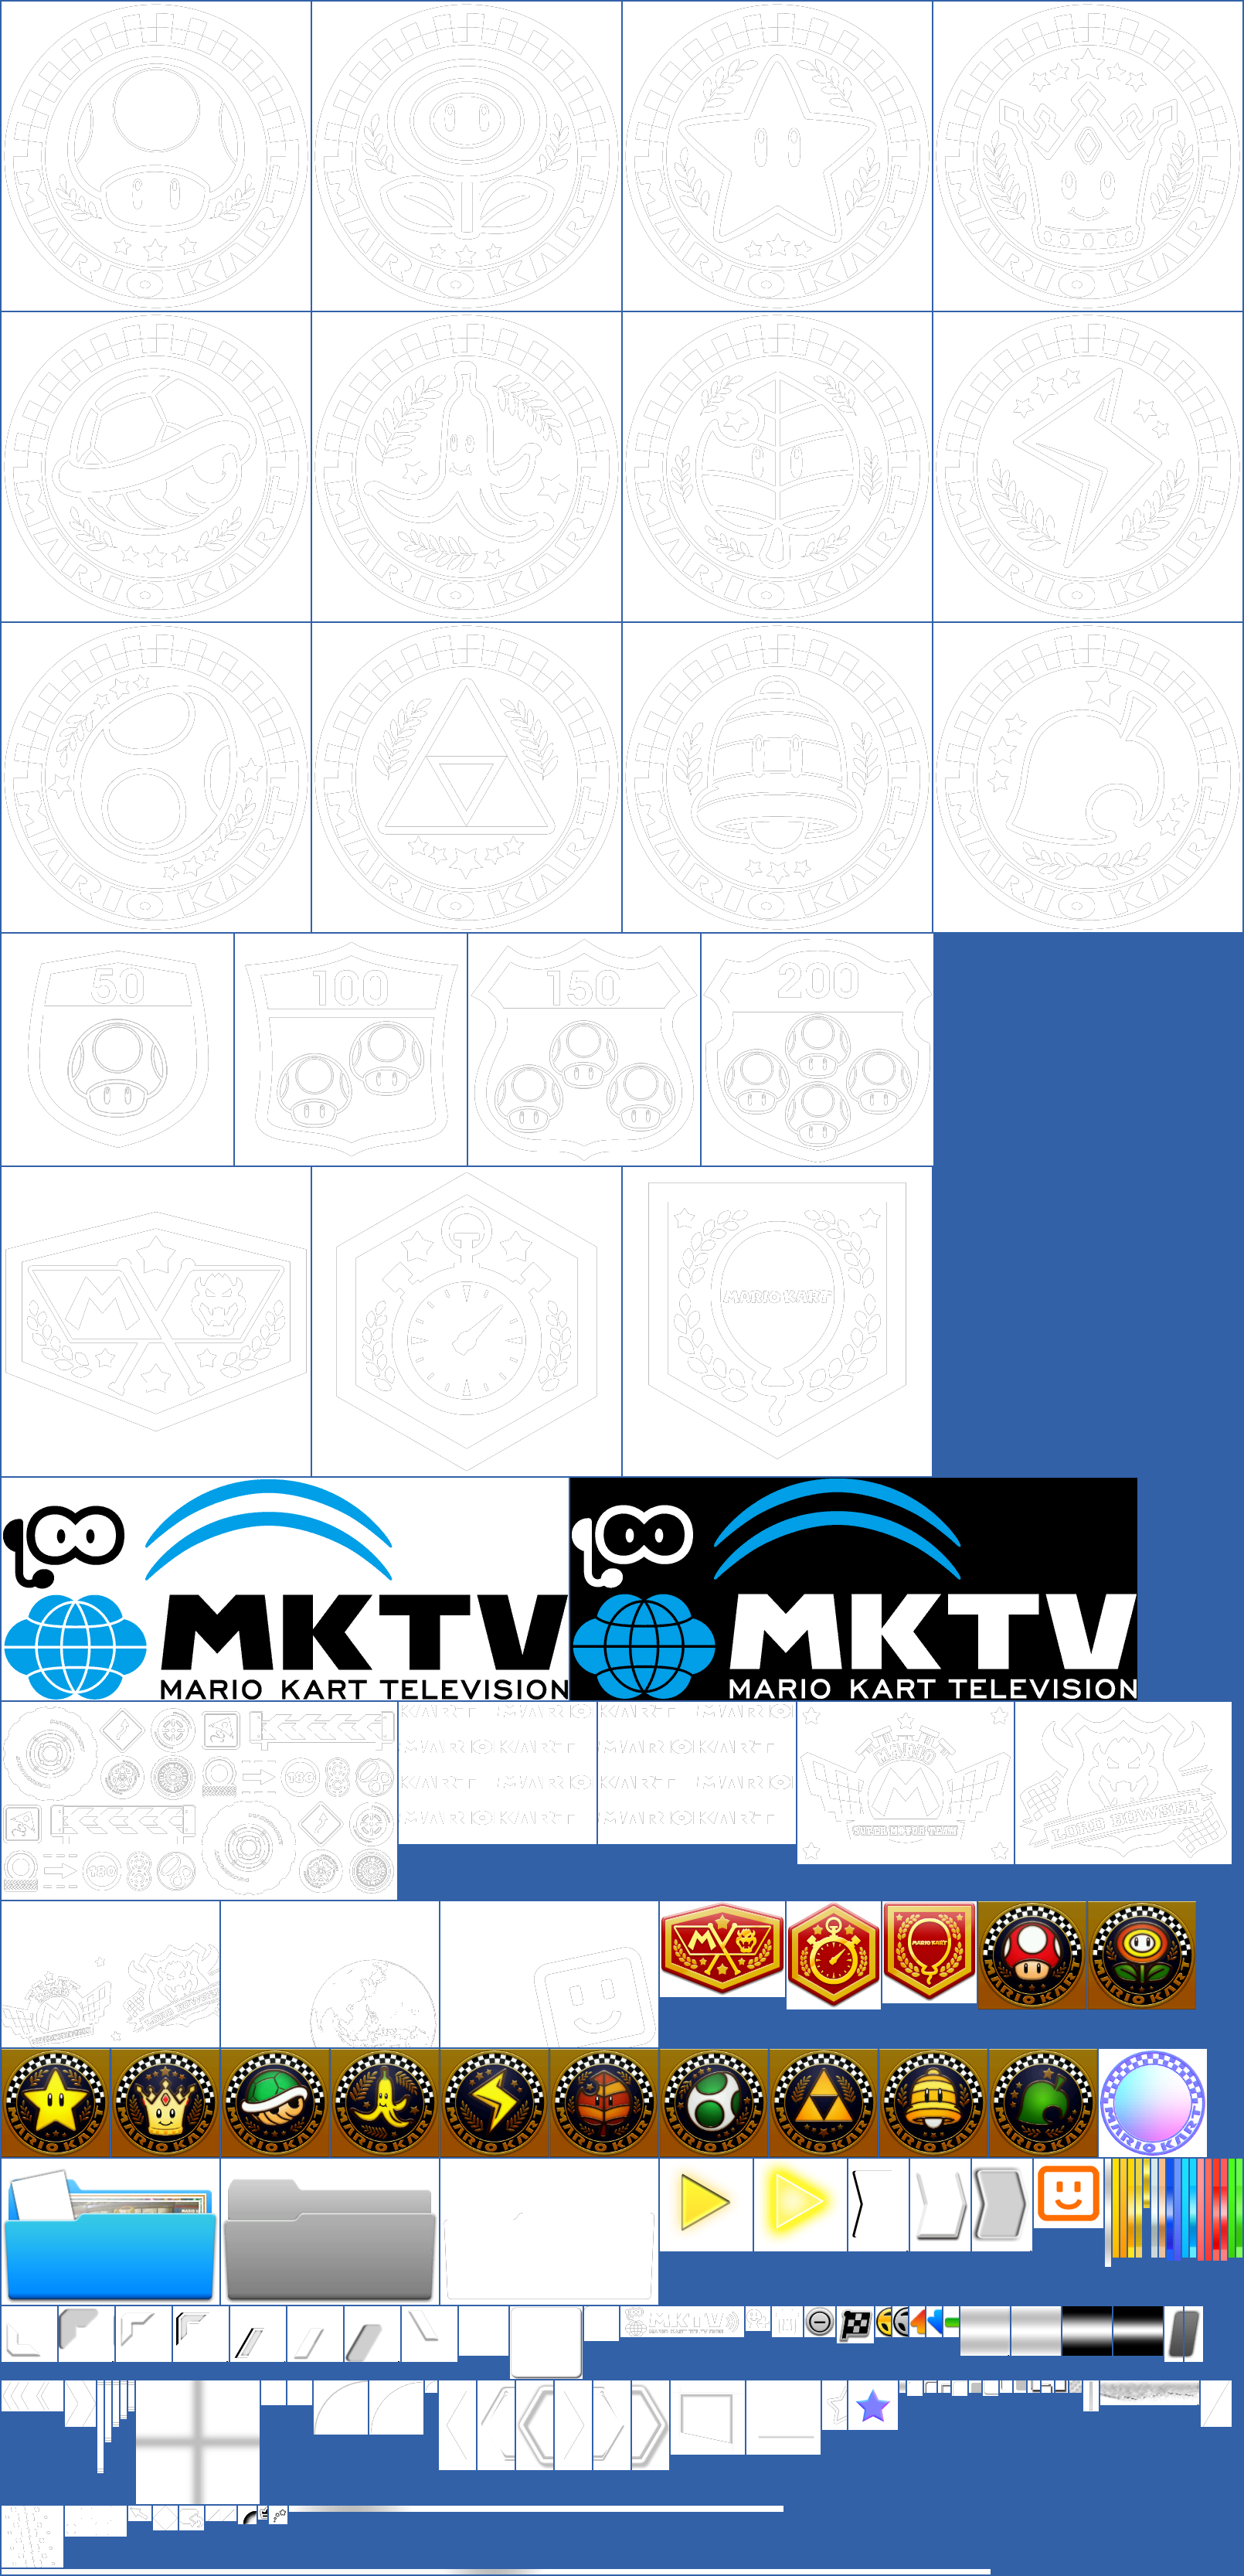 Mario Kart 8 - MKTV